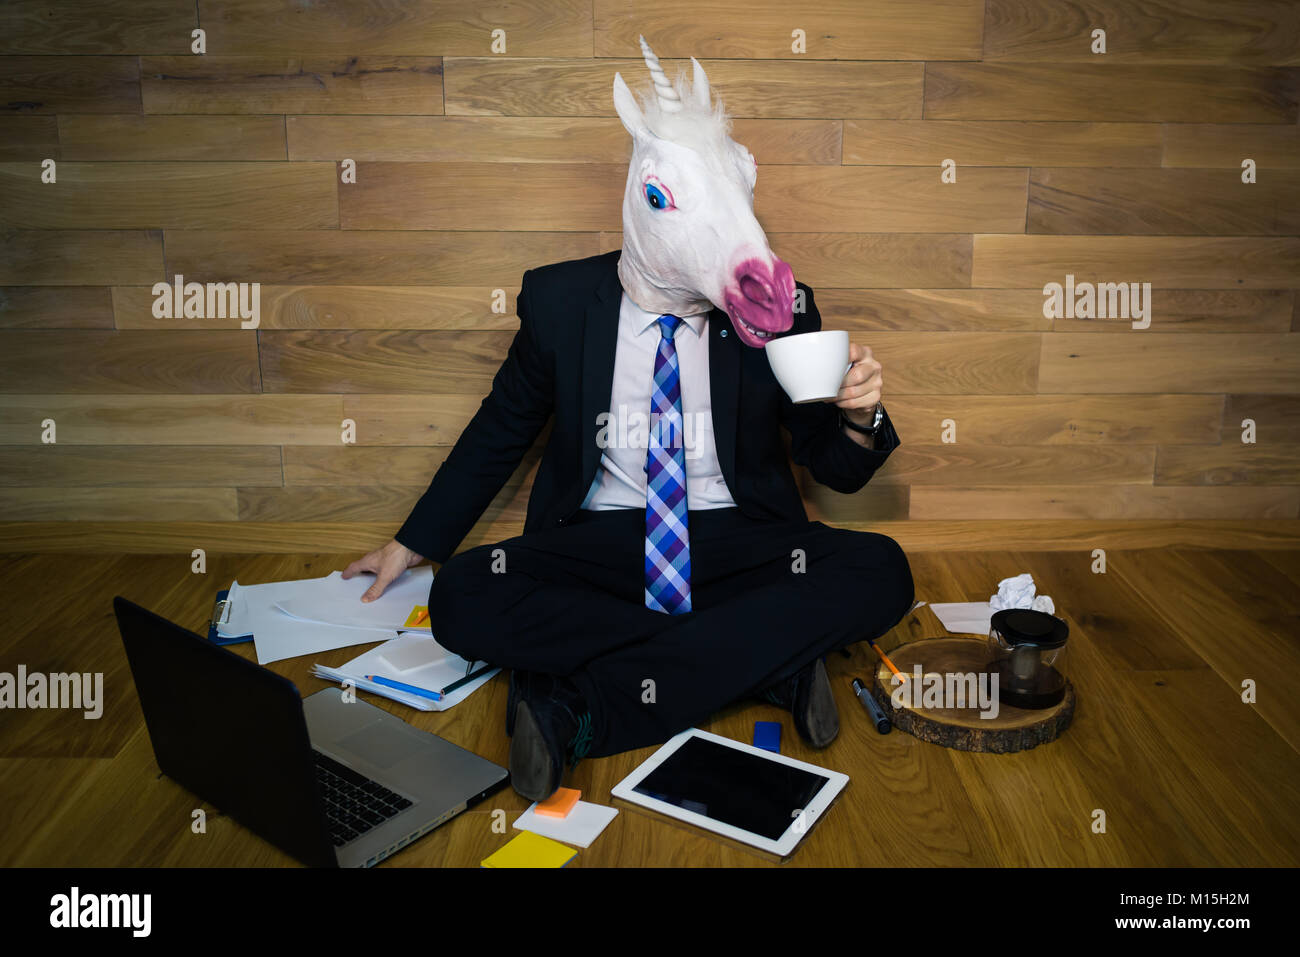 Licorne en costume et cravate sourit et boit du café. Jeune homme drôle de  masque en caoutchouc est assis sur le sol contre un mur et travaille au  bureau à domicile Photo